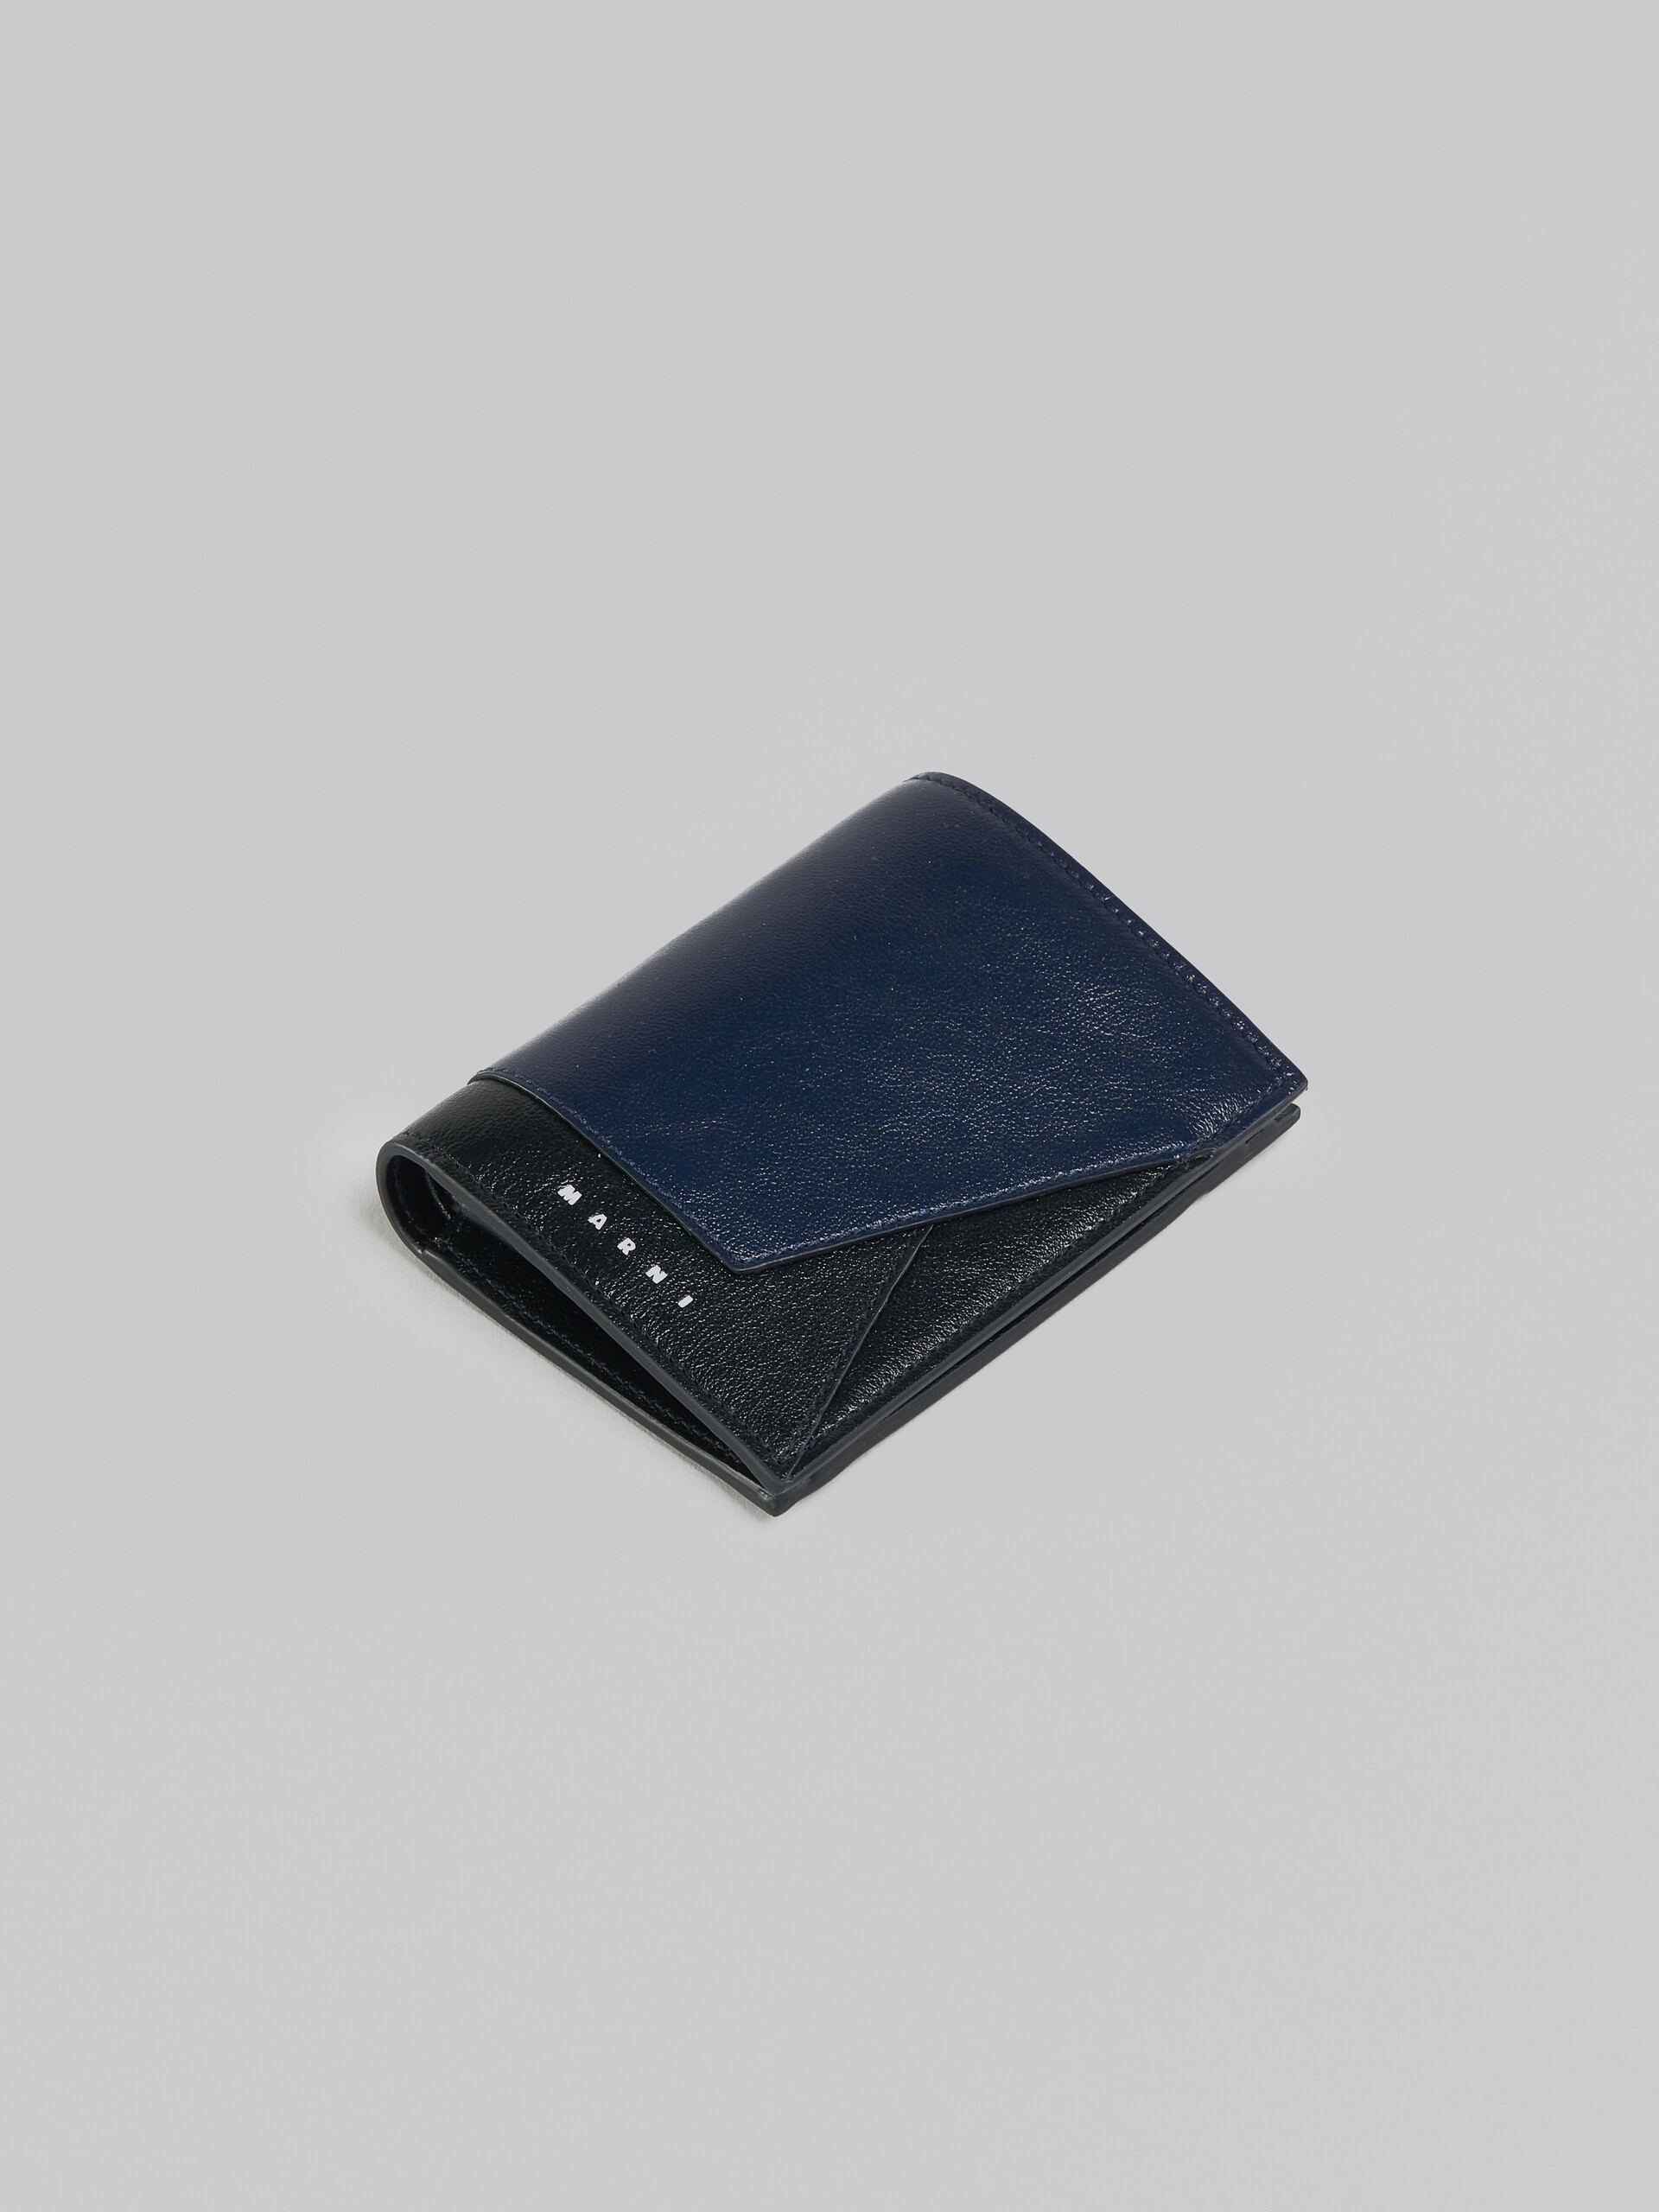 Zweifache Faltbrieftasche aus Leder in Marineblau und Schwarz - Brieftaschen - Image 5